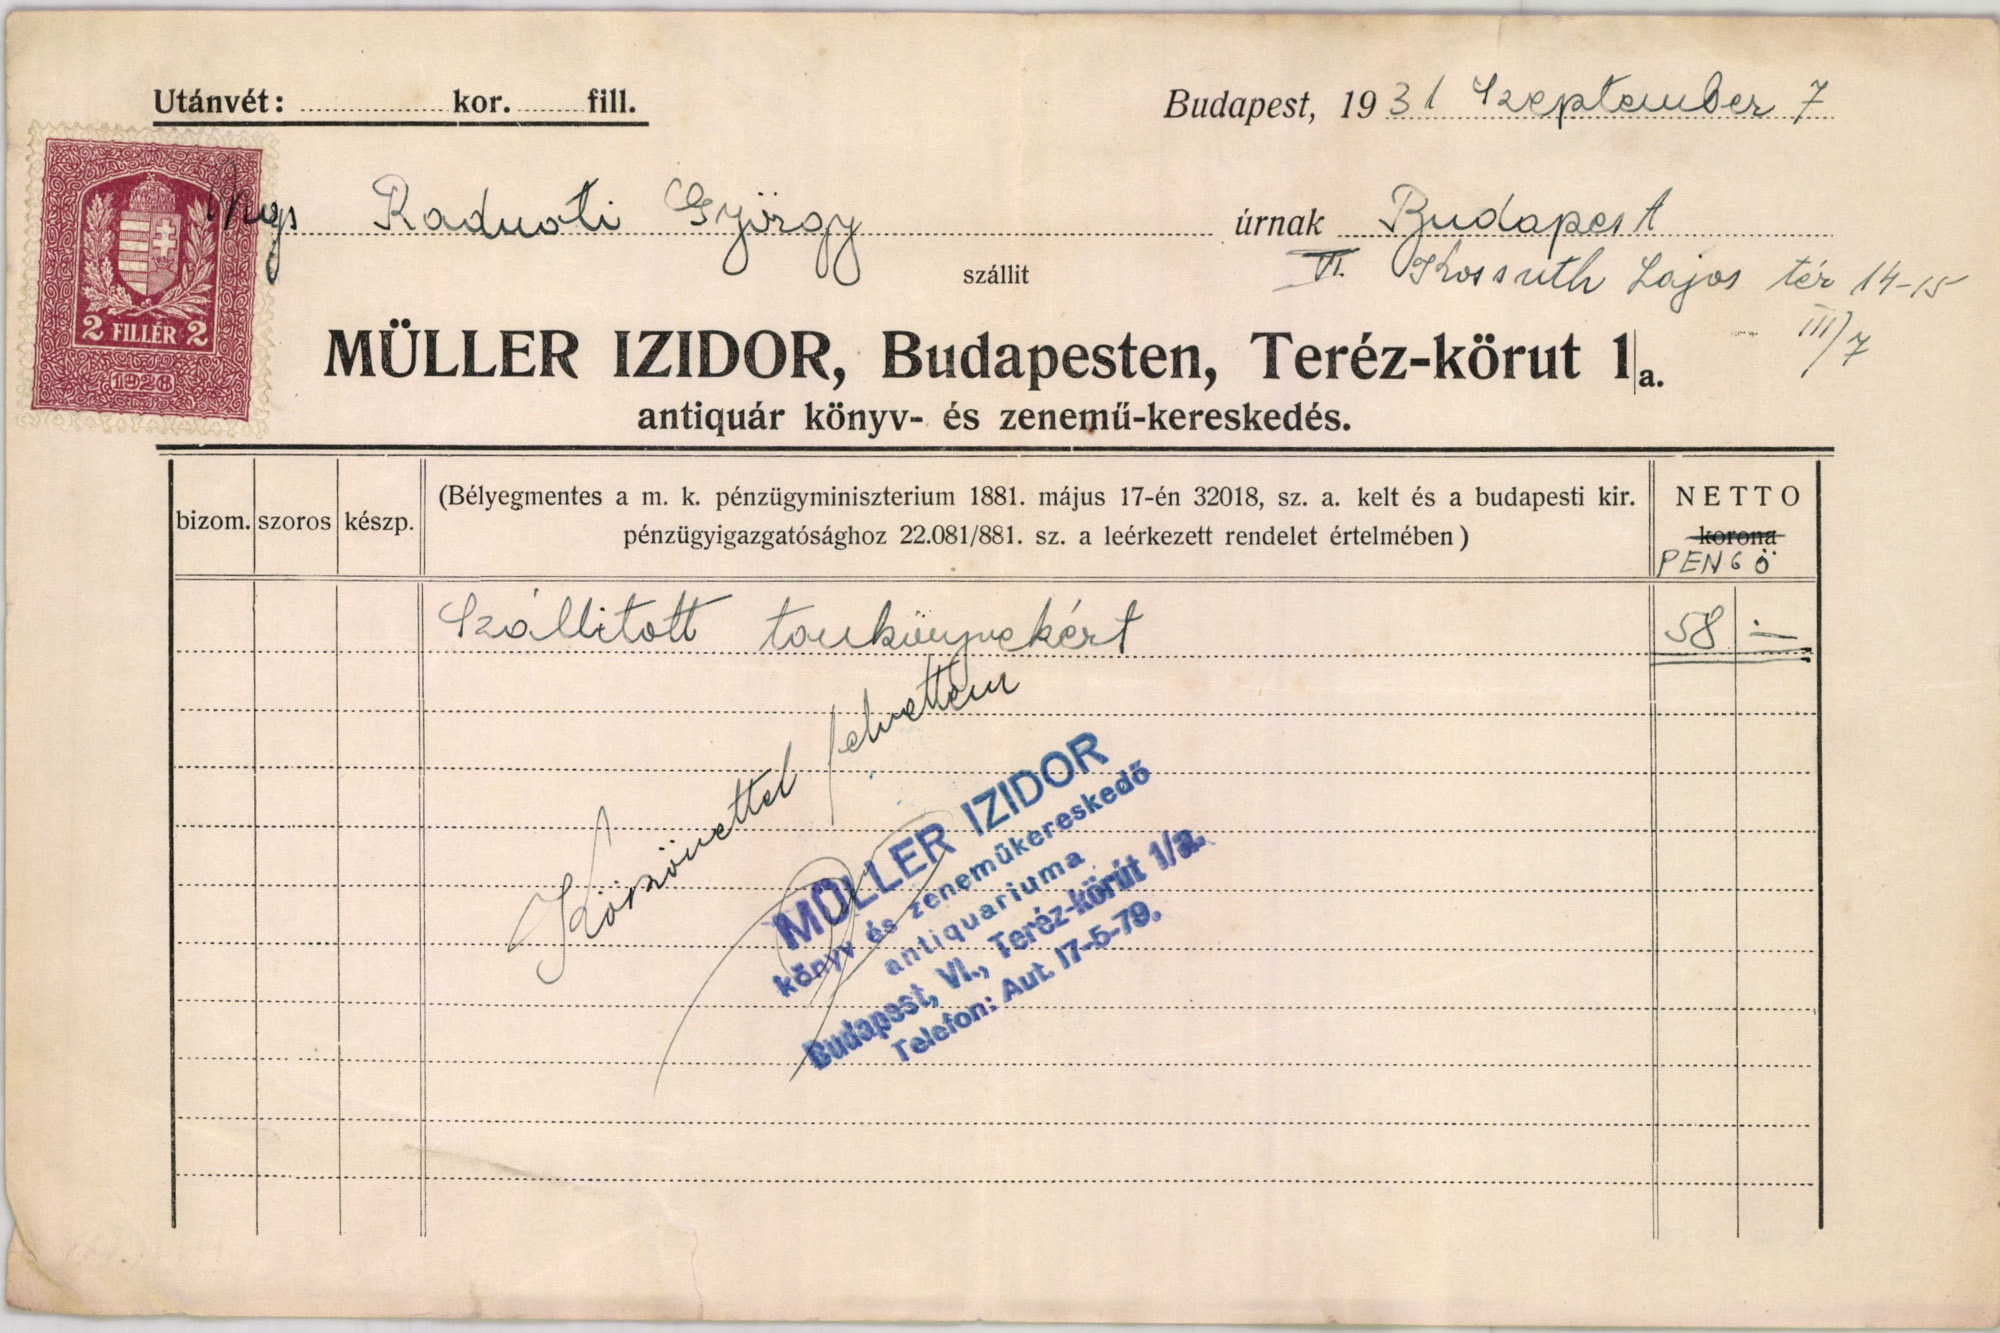 Müller Izidor antiquár könyv- és zenemű kereskedés (Magyar Kereskedelmi és Vendéglátóipari Múzeum CC BY-NC-SA)